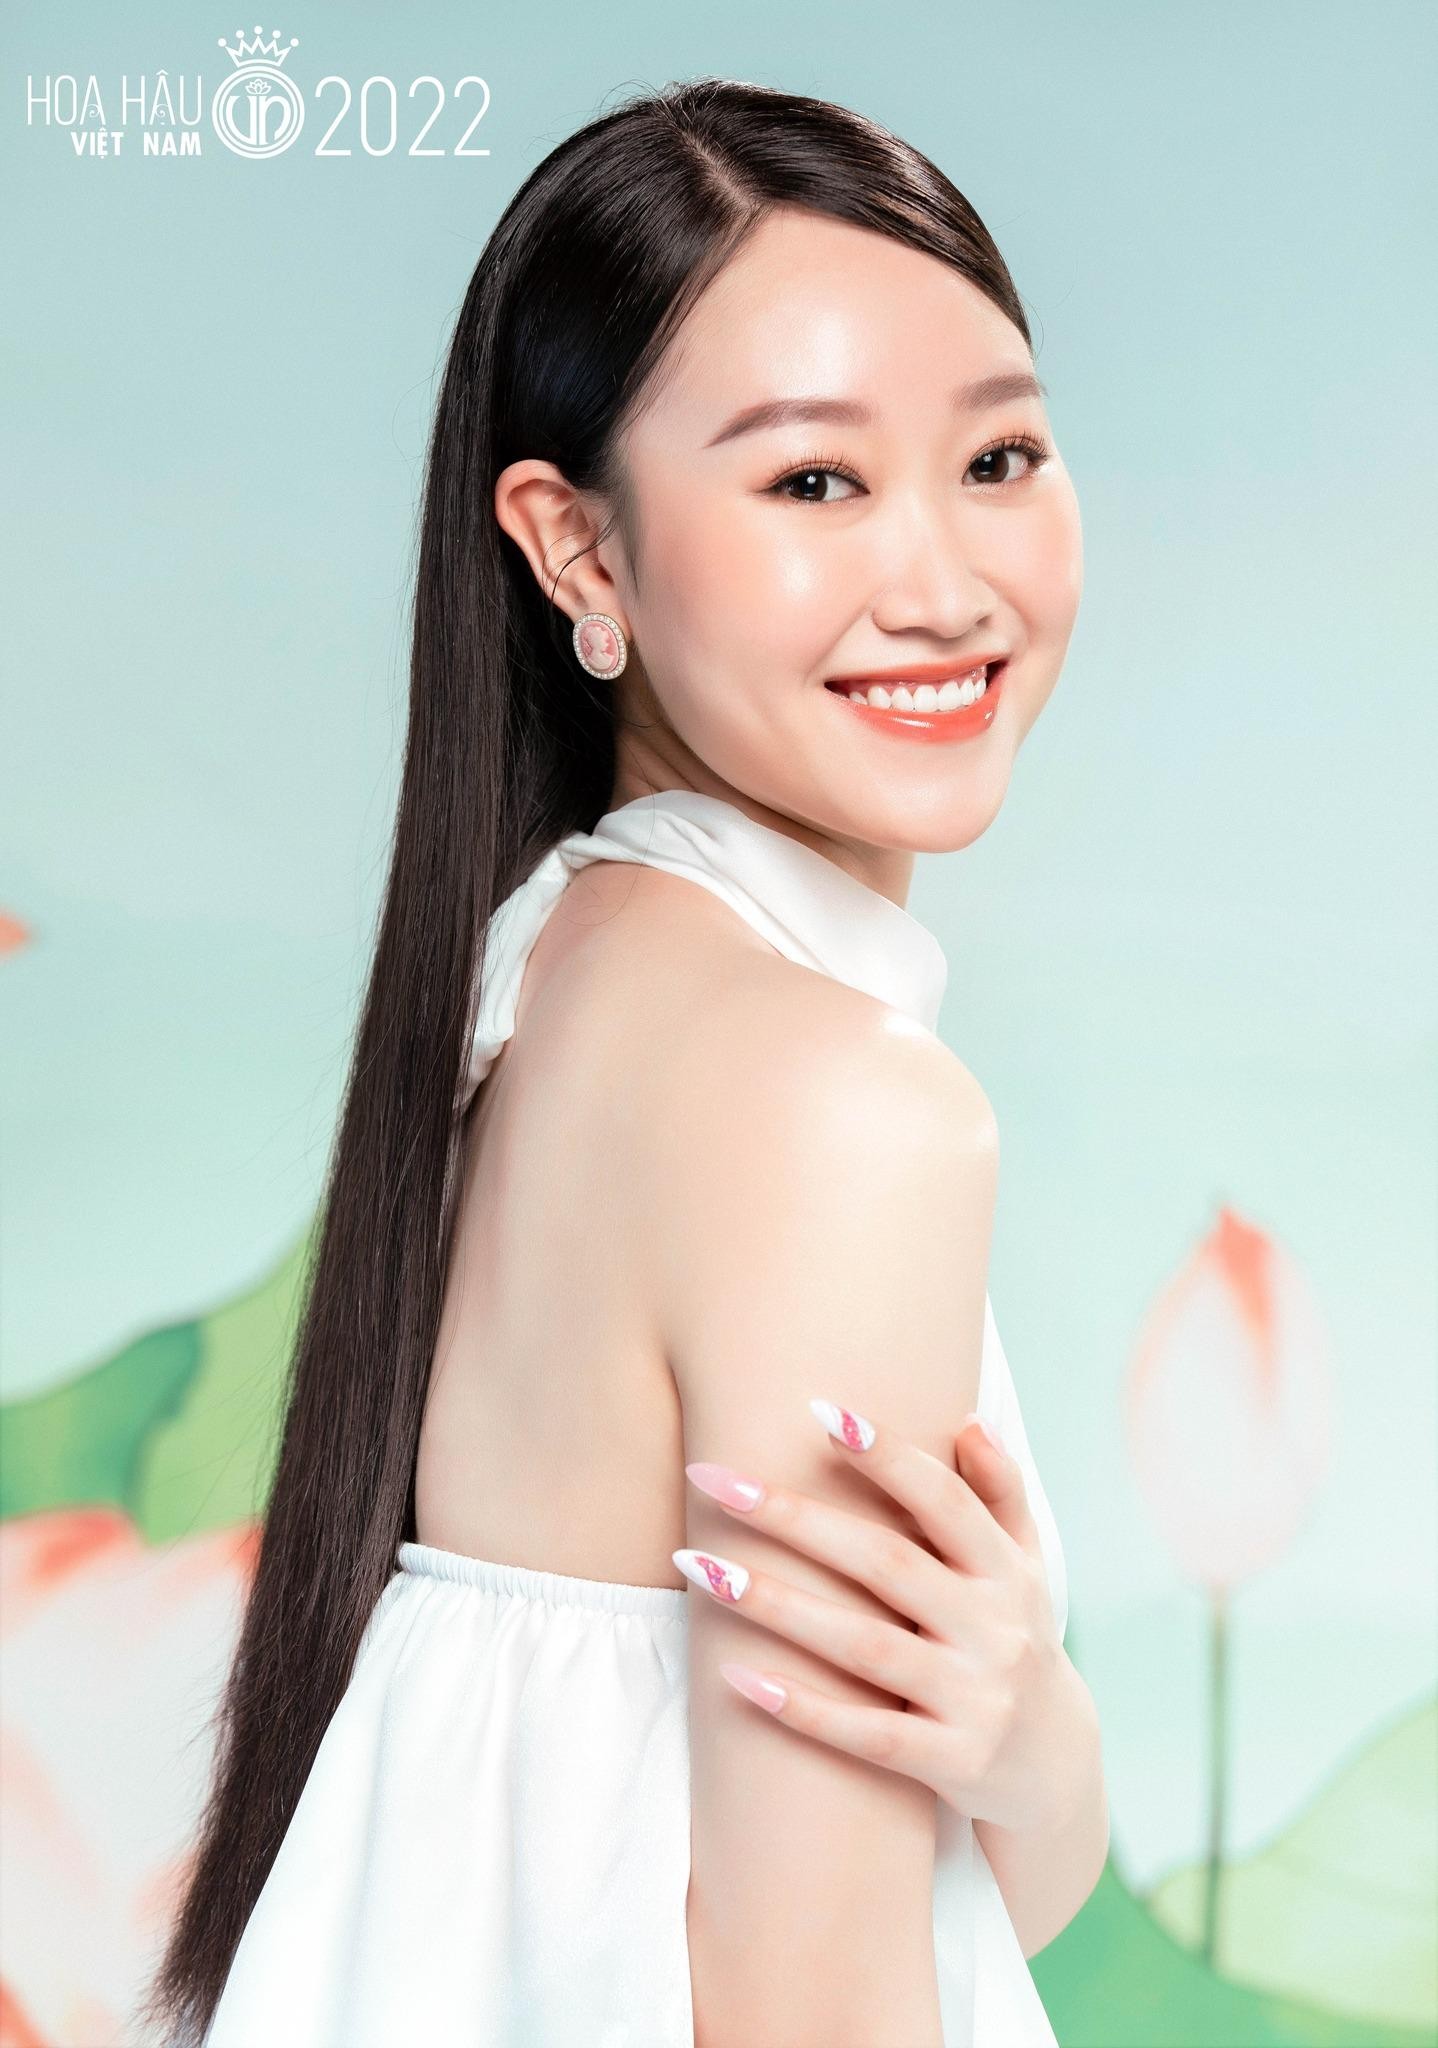 Nhan sắc cận của thí sinh Hoa hậu Việt Nam 2022 - Ảnh 23.